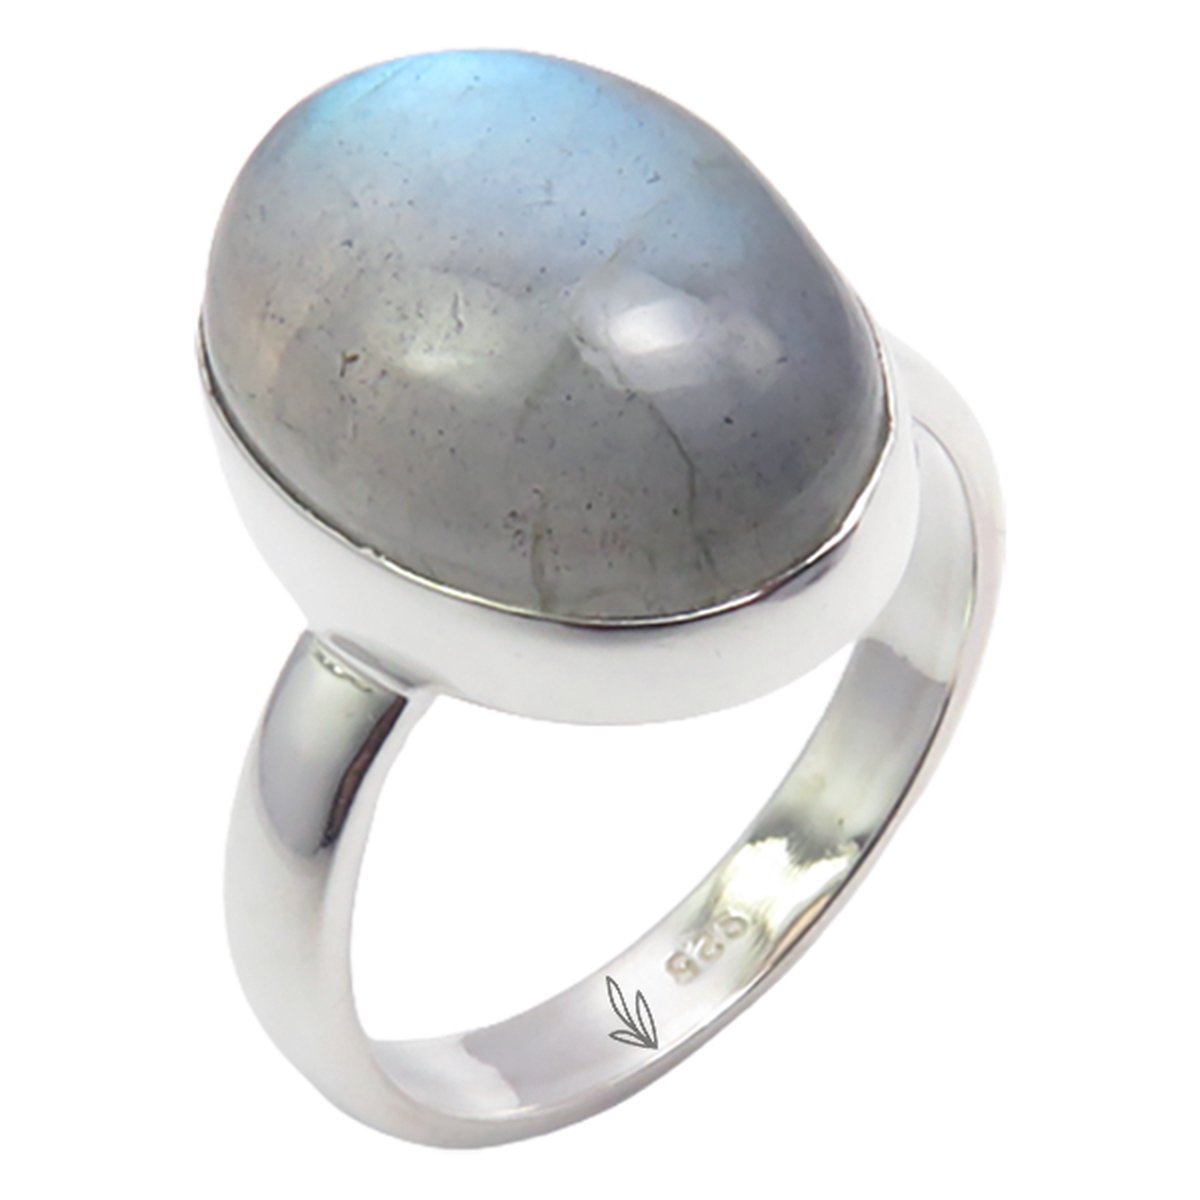 Natuursieraad - 925 sterling zilver labradoriet ring maat 16.50 - luxe edelsteen sieraad - handgemaakt